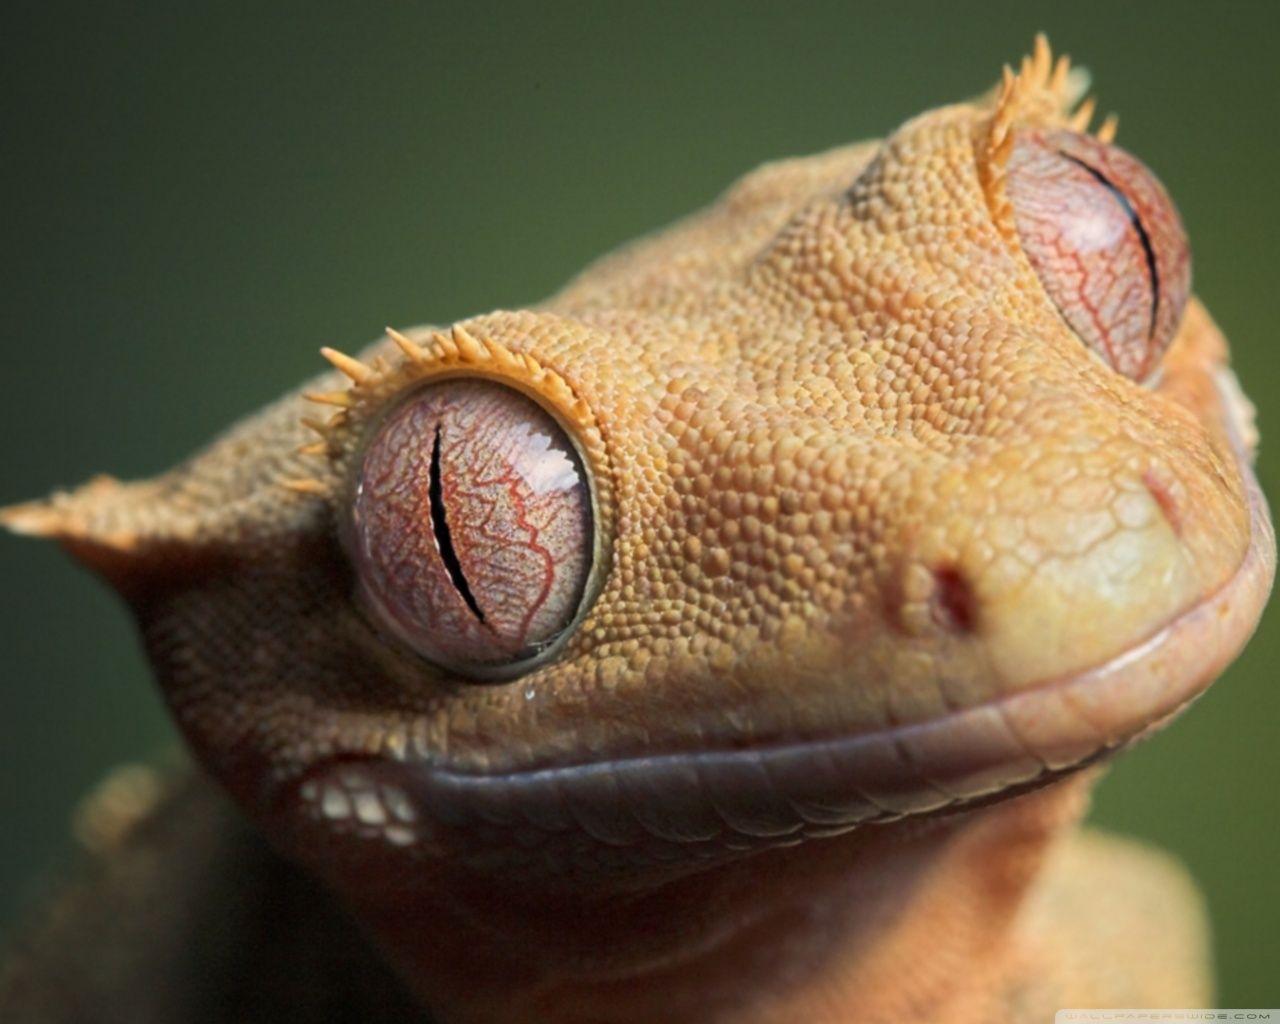 Crested Gecko Close Up. Crested Geckos & Vivariums